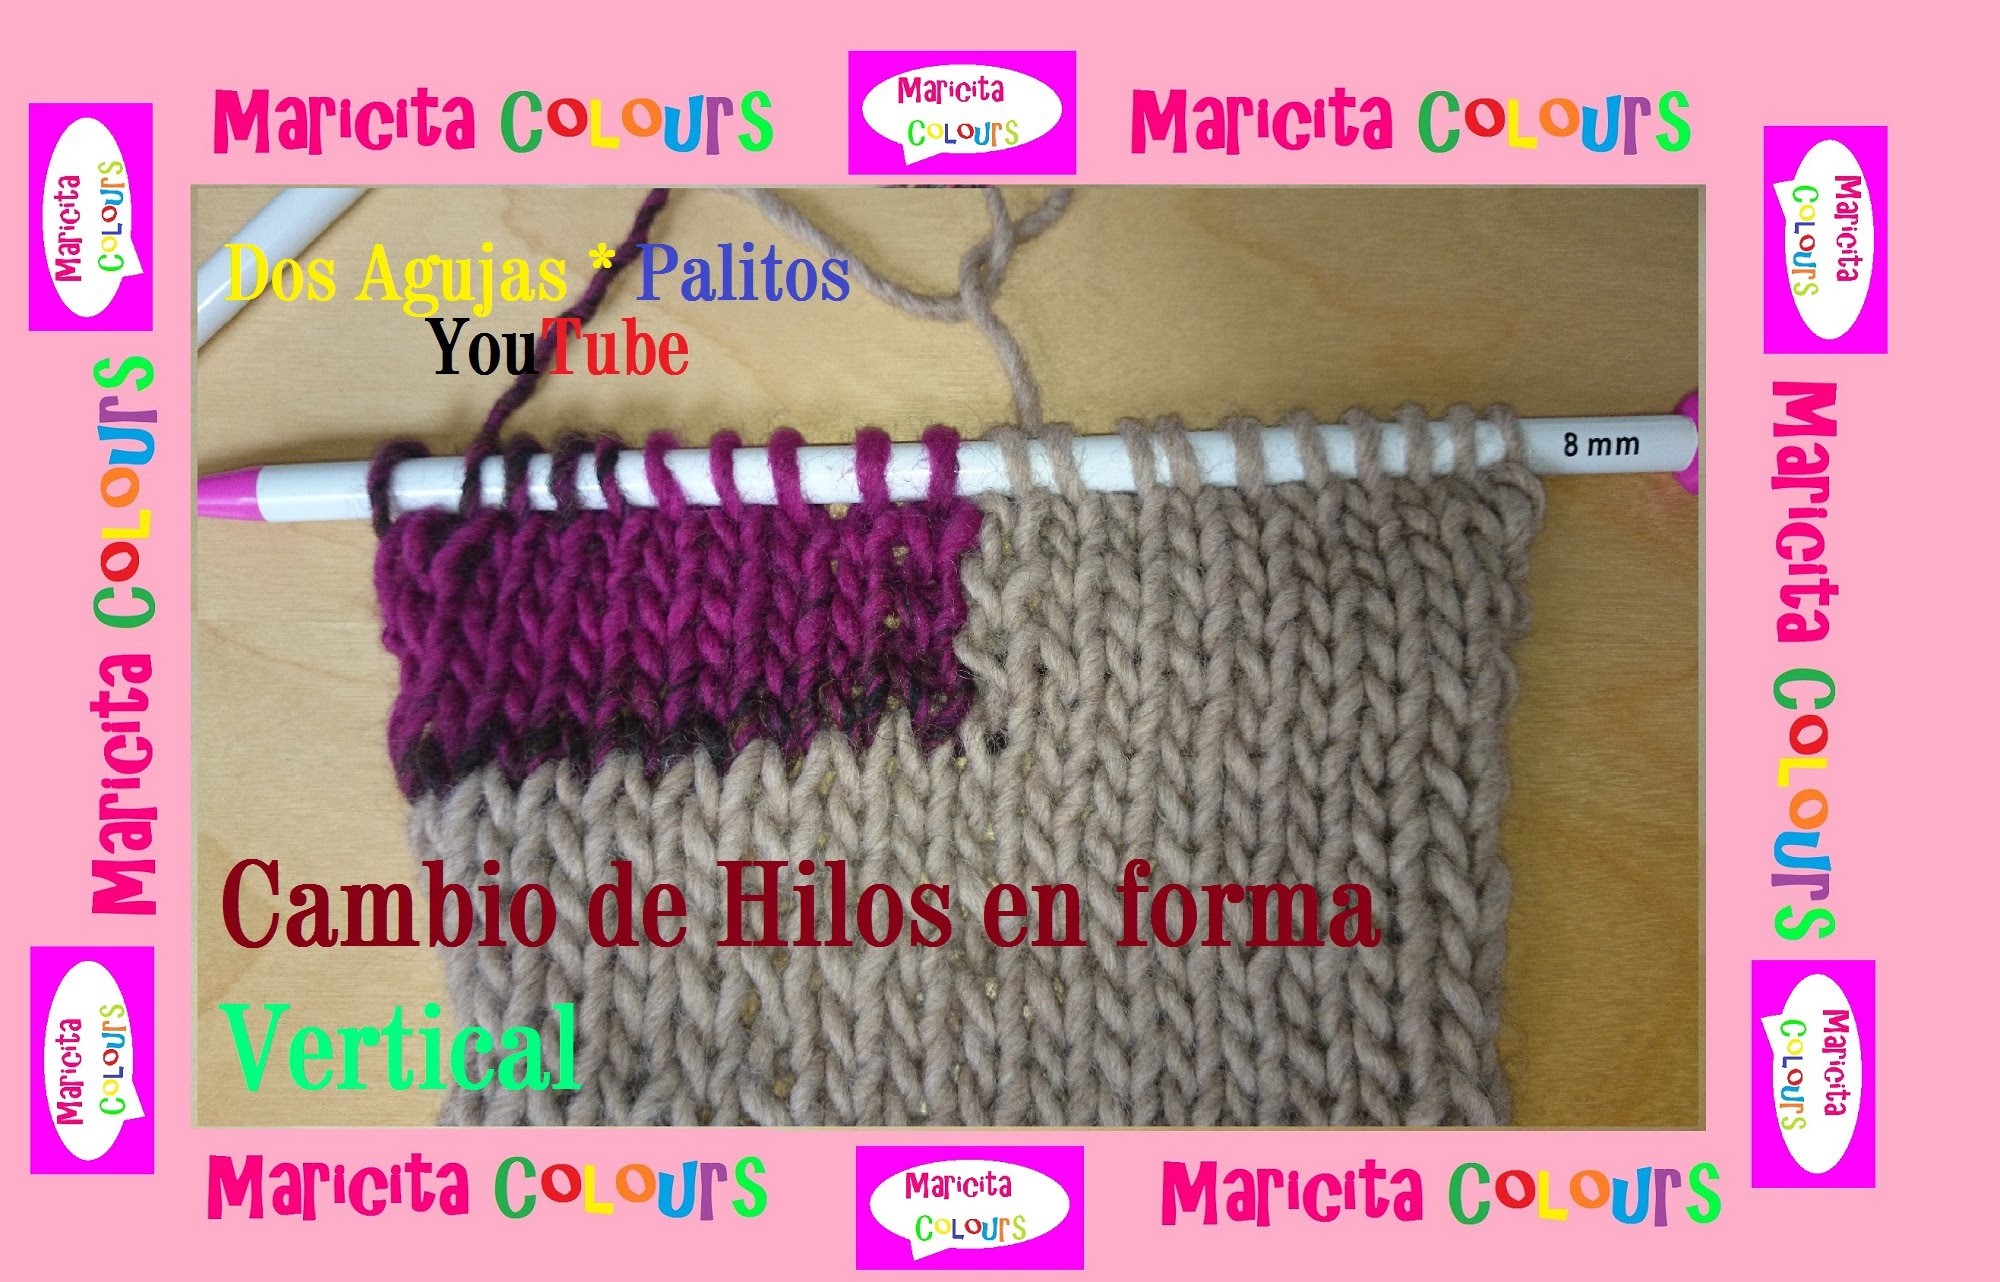 Dos Agujas "Cómo cambiar hilos de forma Vertical" por Maricita Colours Tutorial